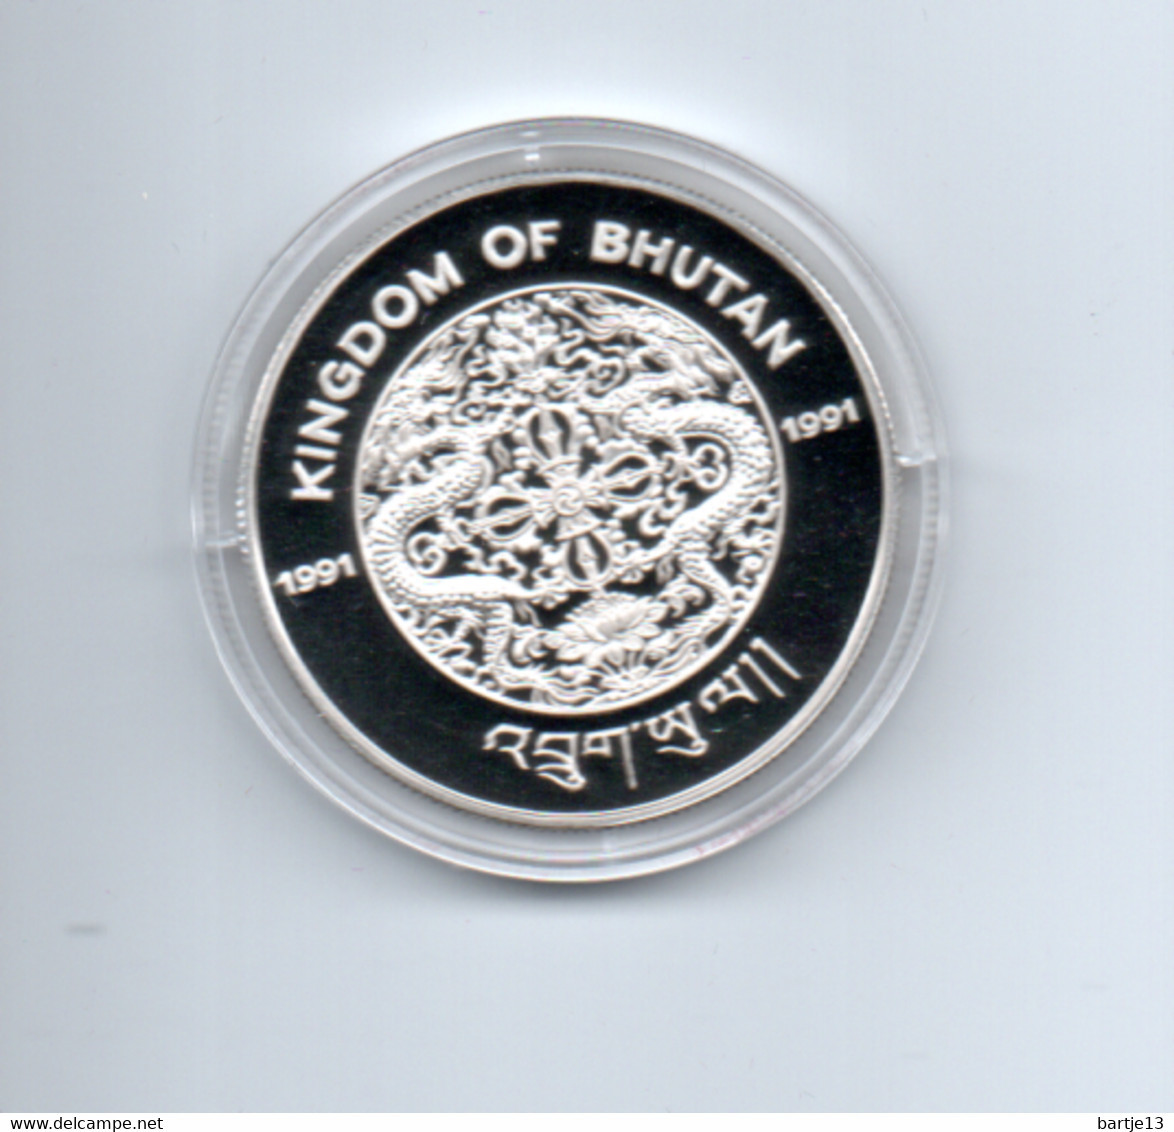 BHUTAN 300 NGULTRUMS 1991 ZILVER PROOF KM65  ENDANGERED WILDLIFE SNEEUWLUIPAARD - Bhutan